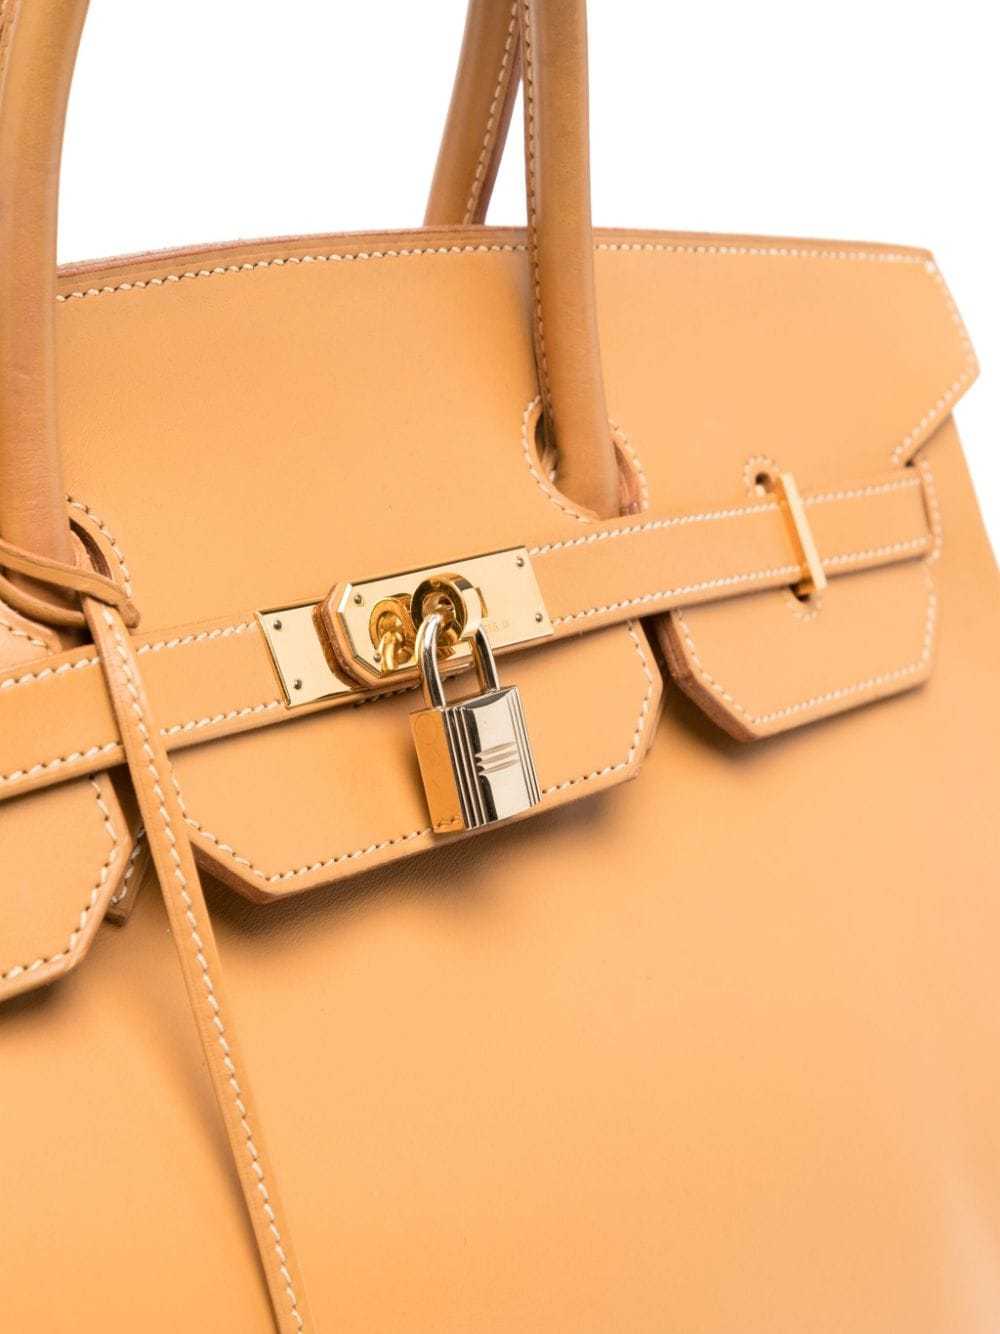 Hermès Pre-Owned Birkin 40 handbag - Brown - image 4